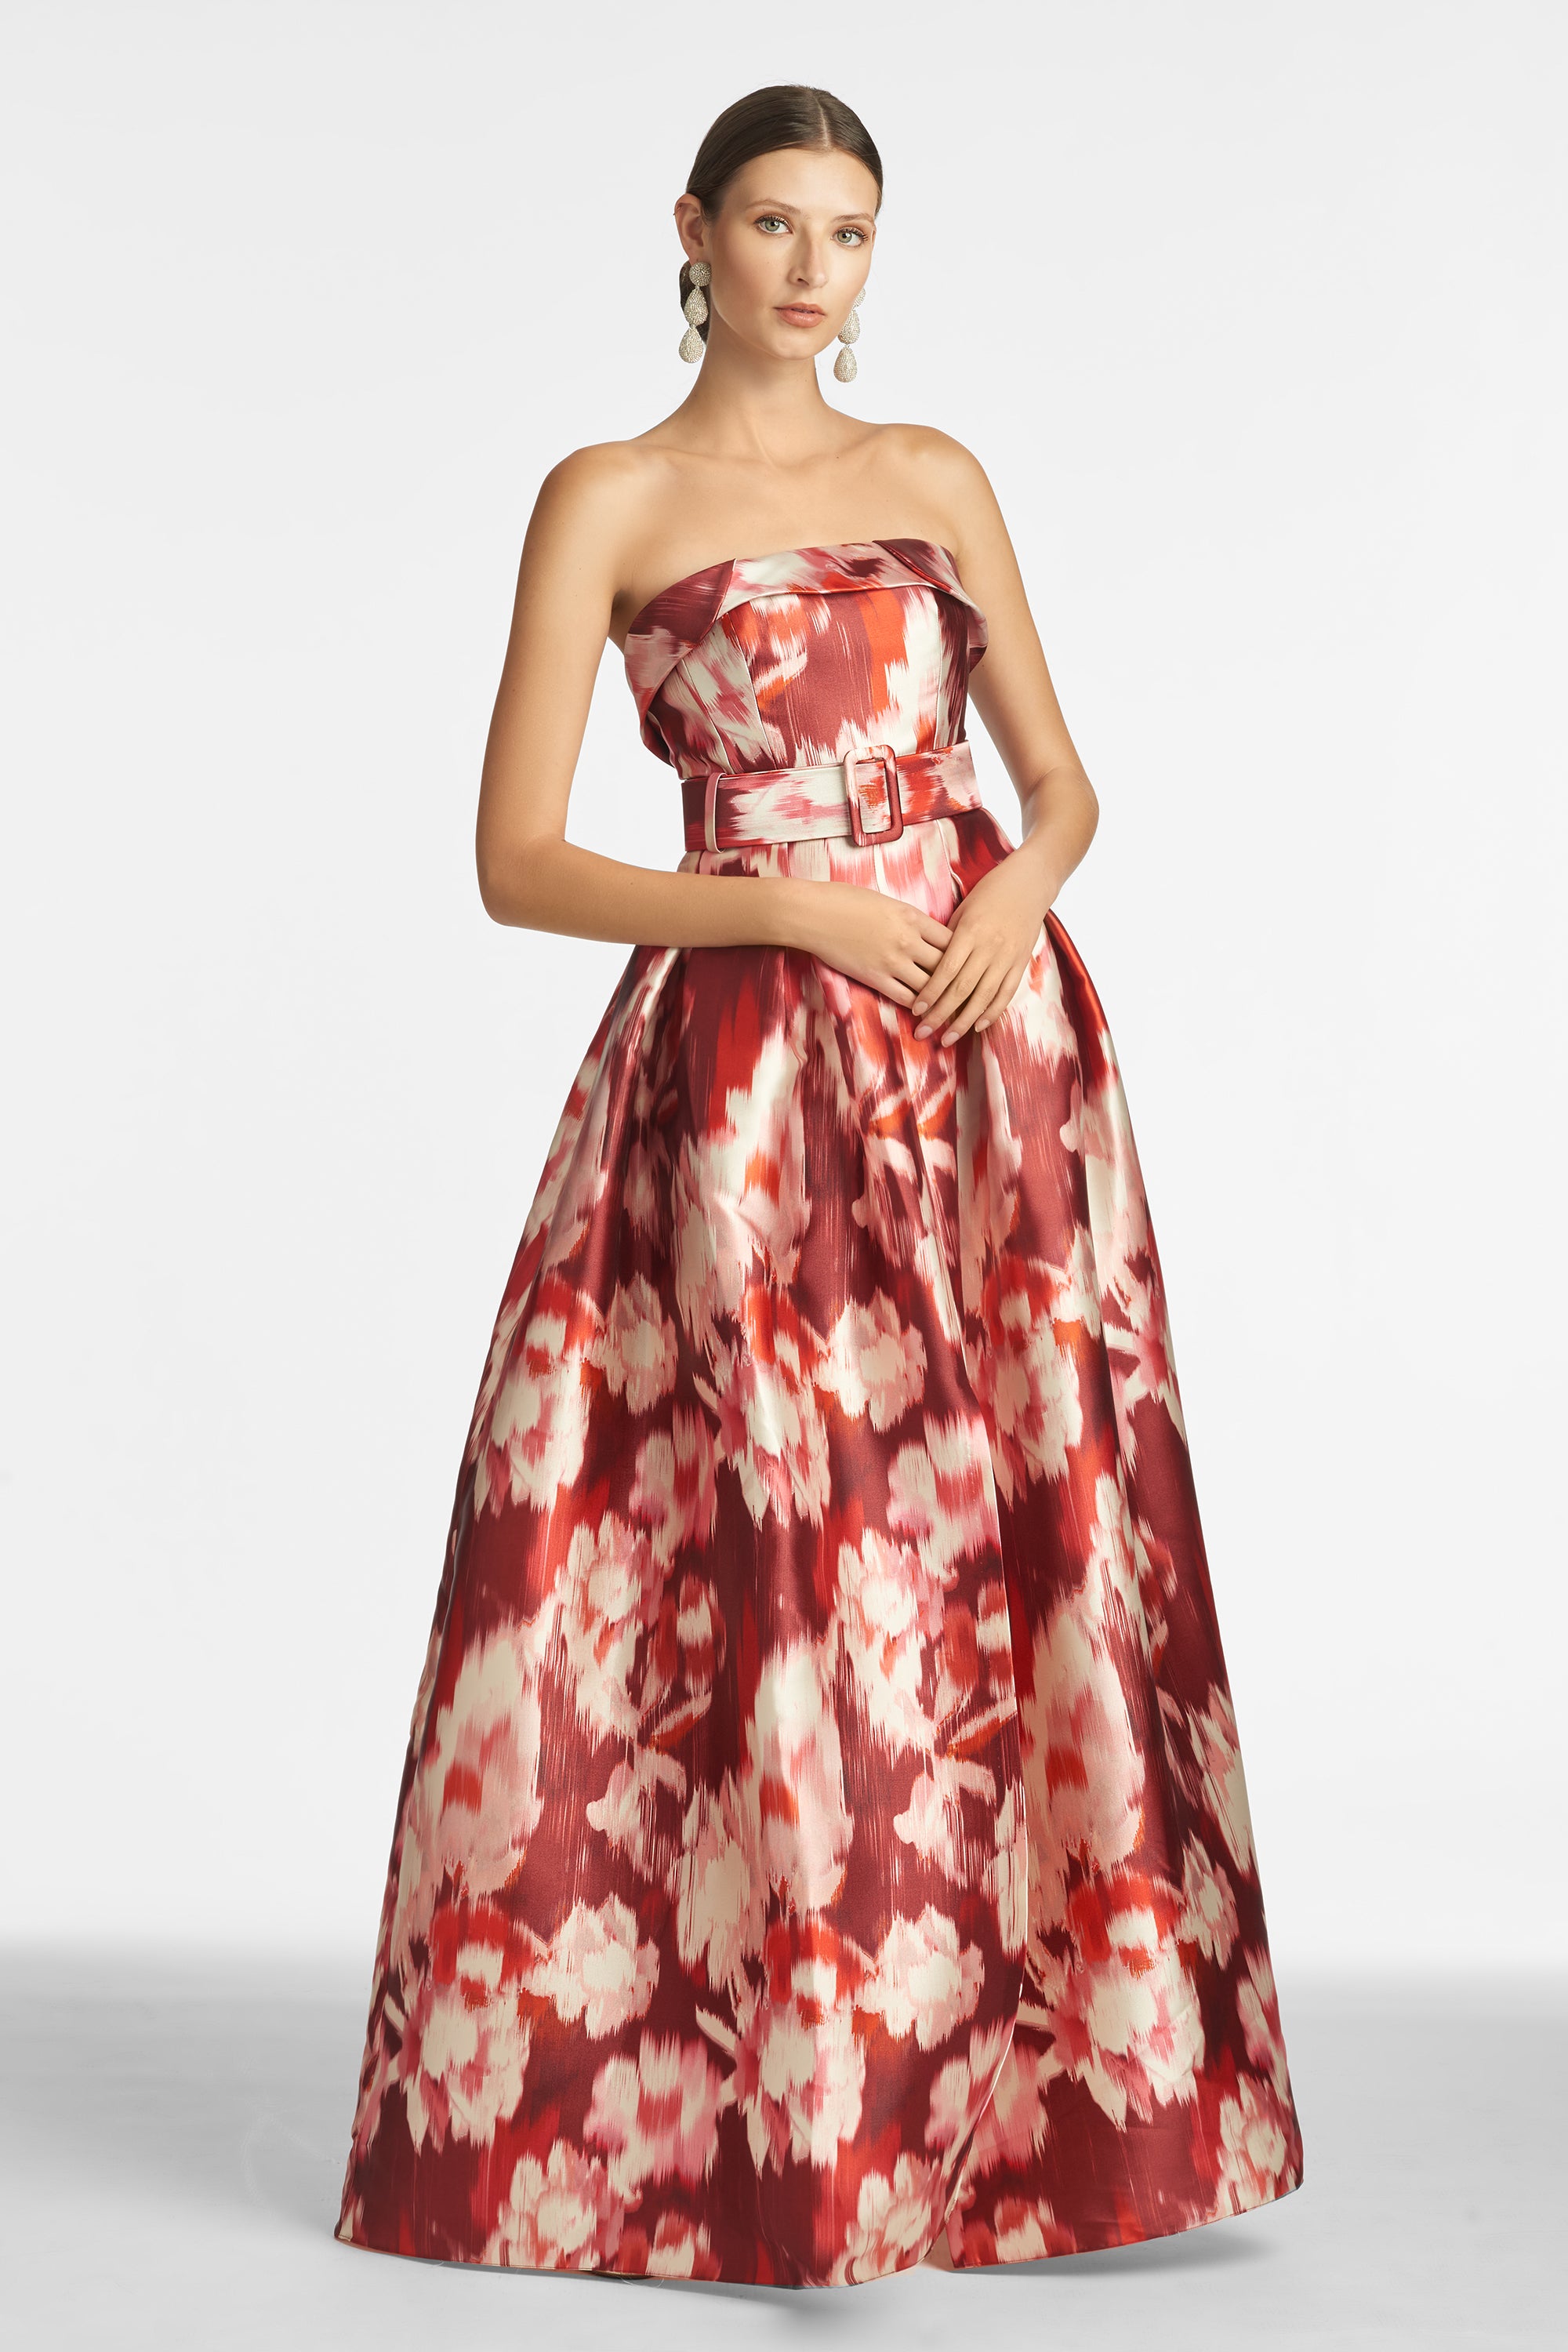 Fan Bingbing Floral Dress | Glamour